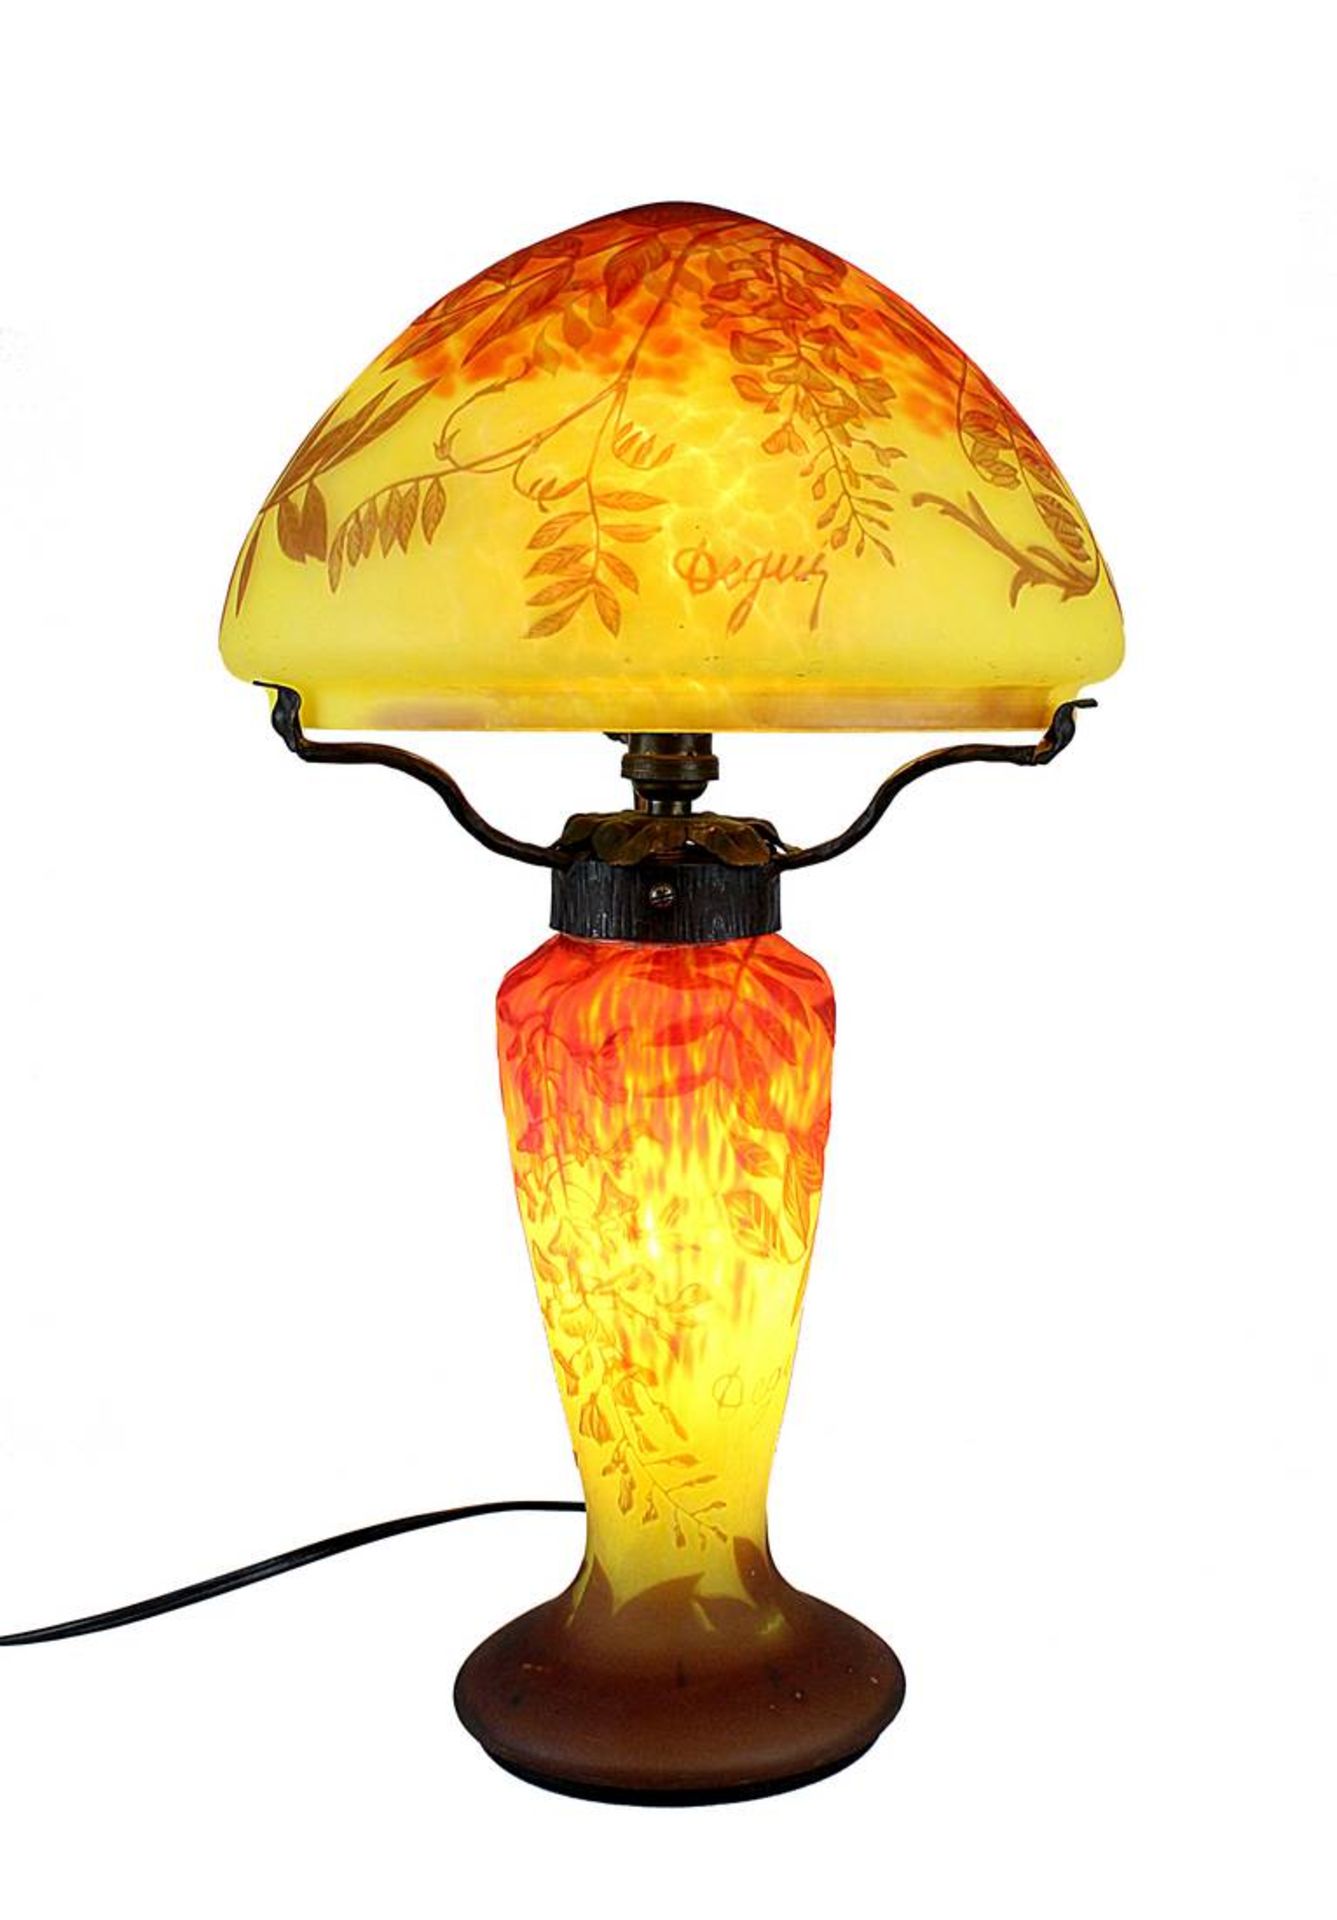 Degué Tischlampe, Compiègne 1926/39. Pilzförmige Lampe aus Klarglas mit gelben und orangenen